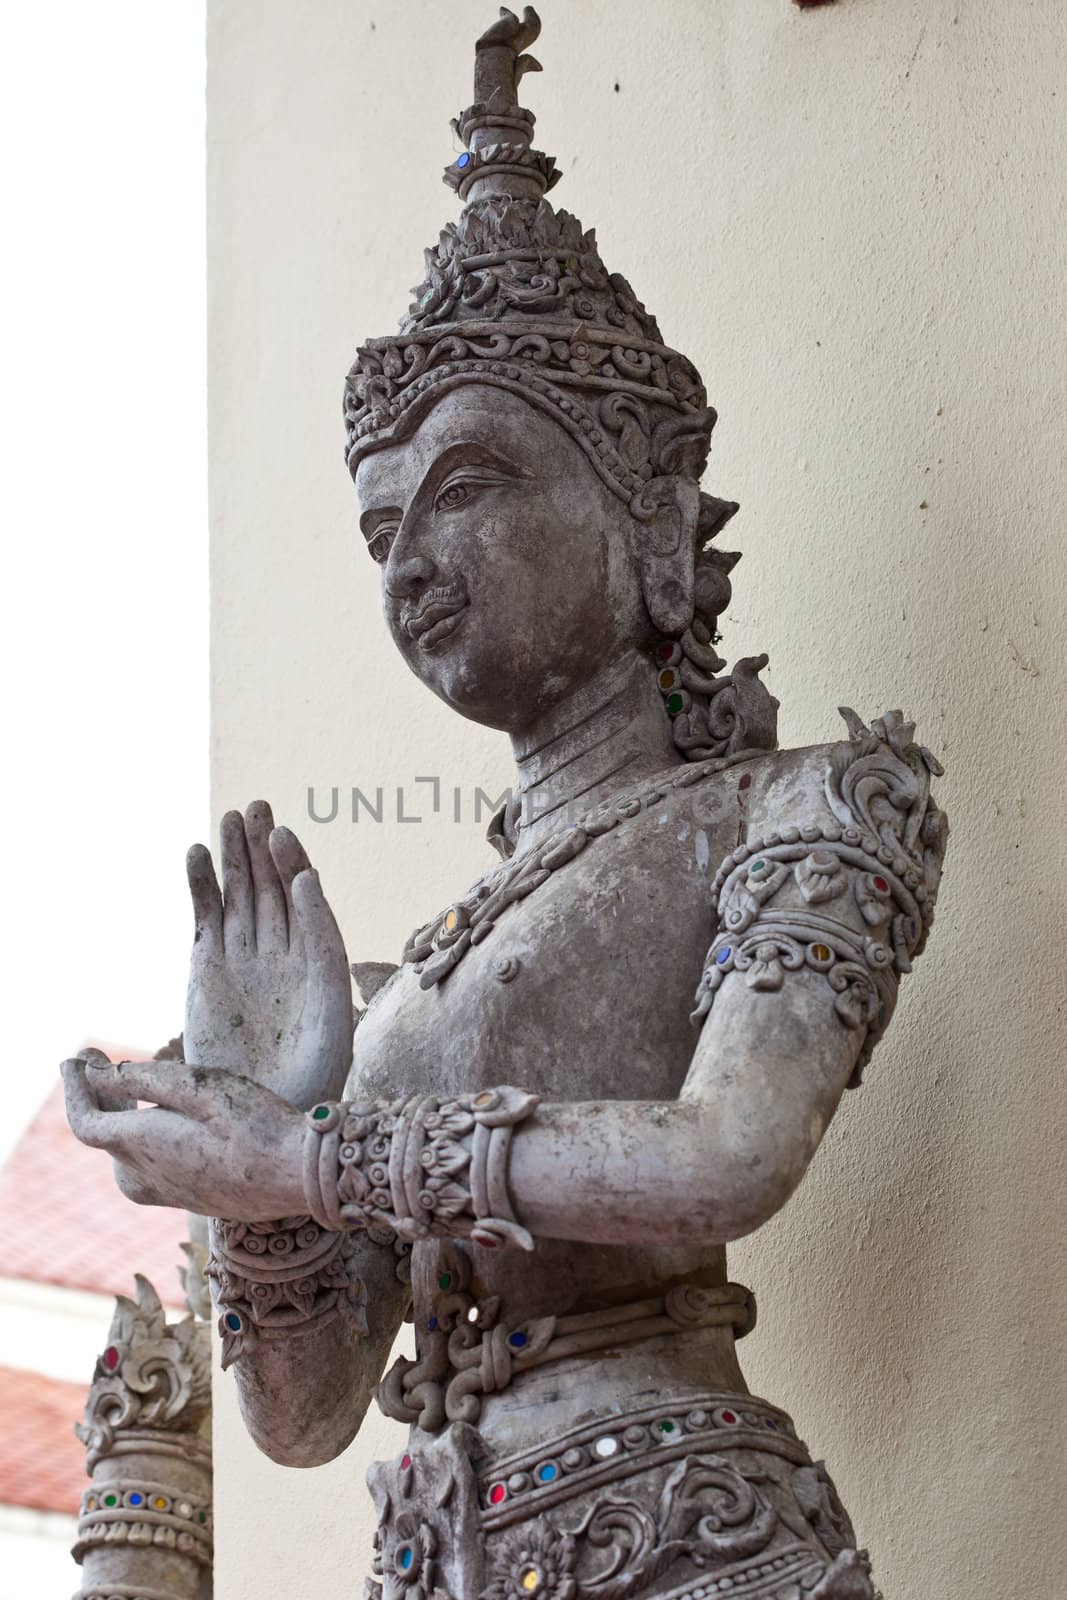 Thai art Statues in thai temple